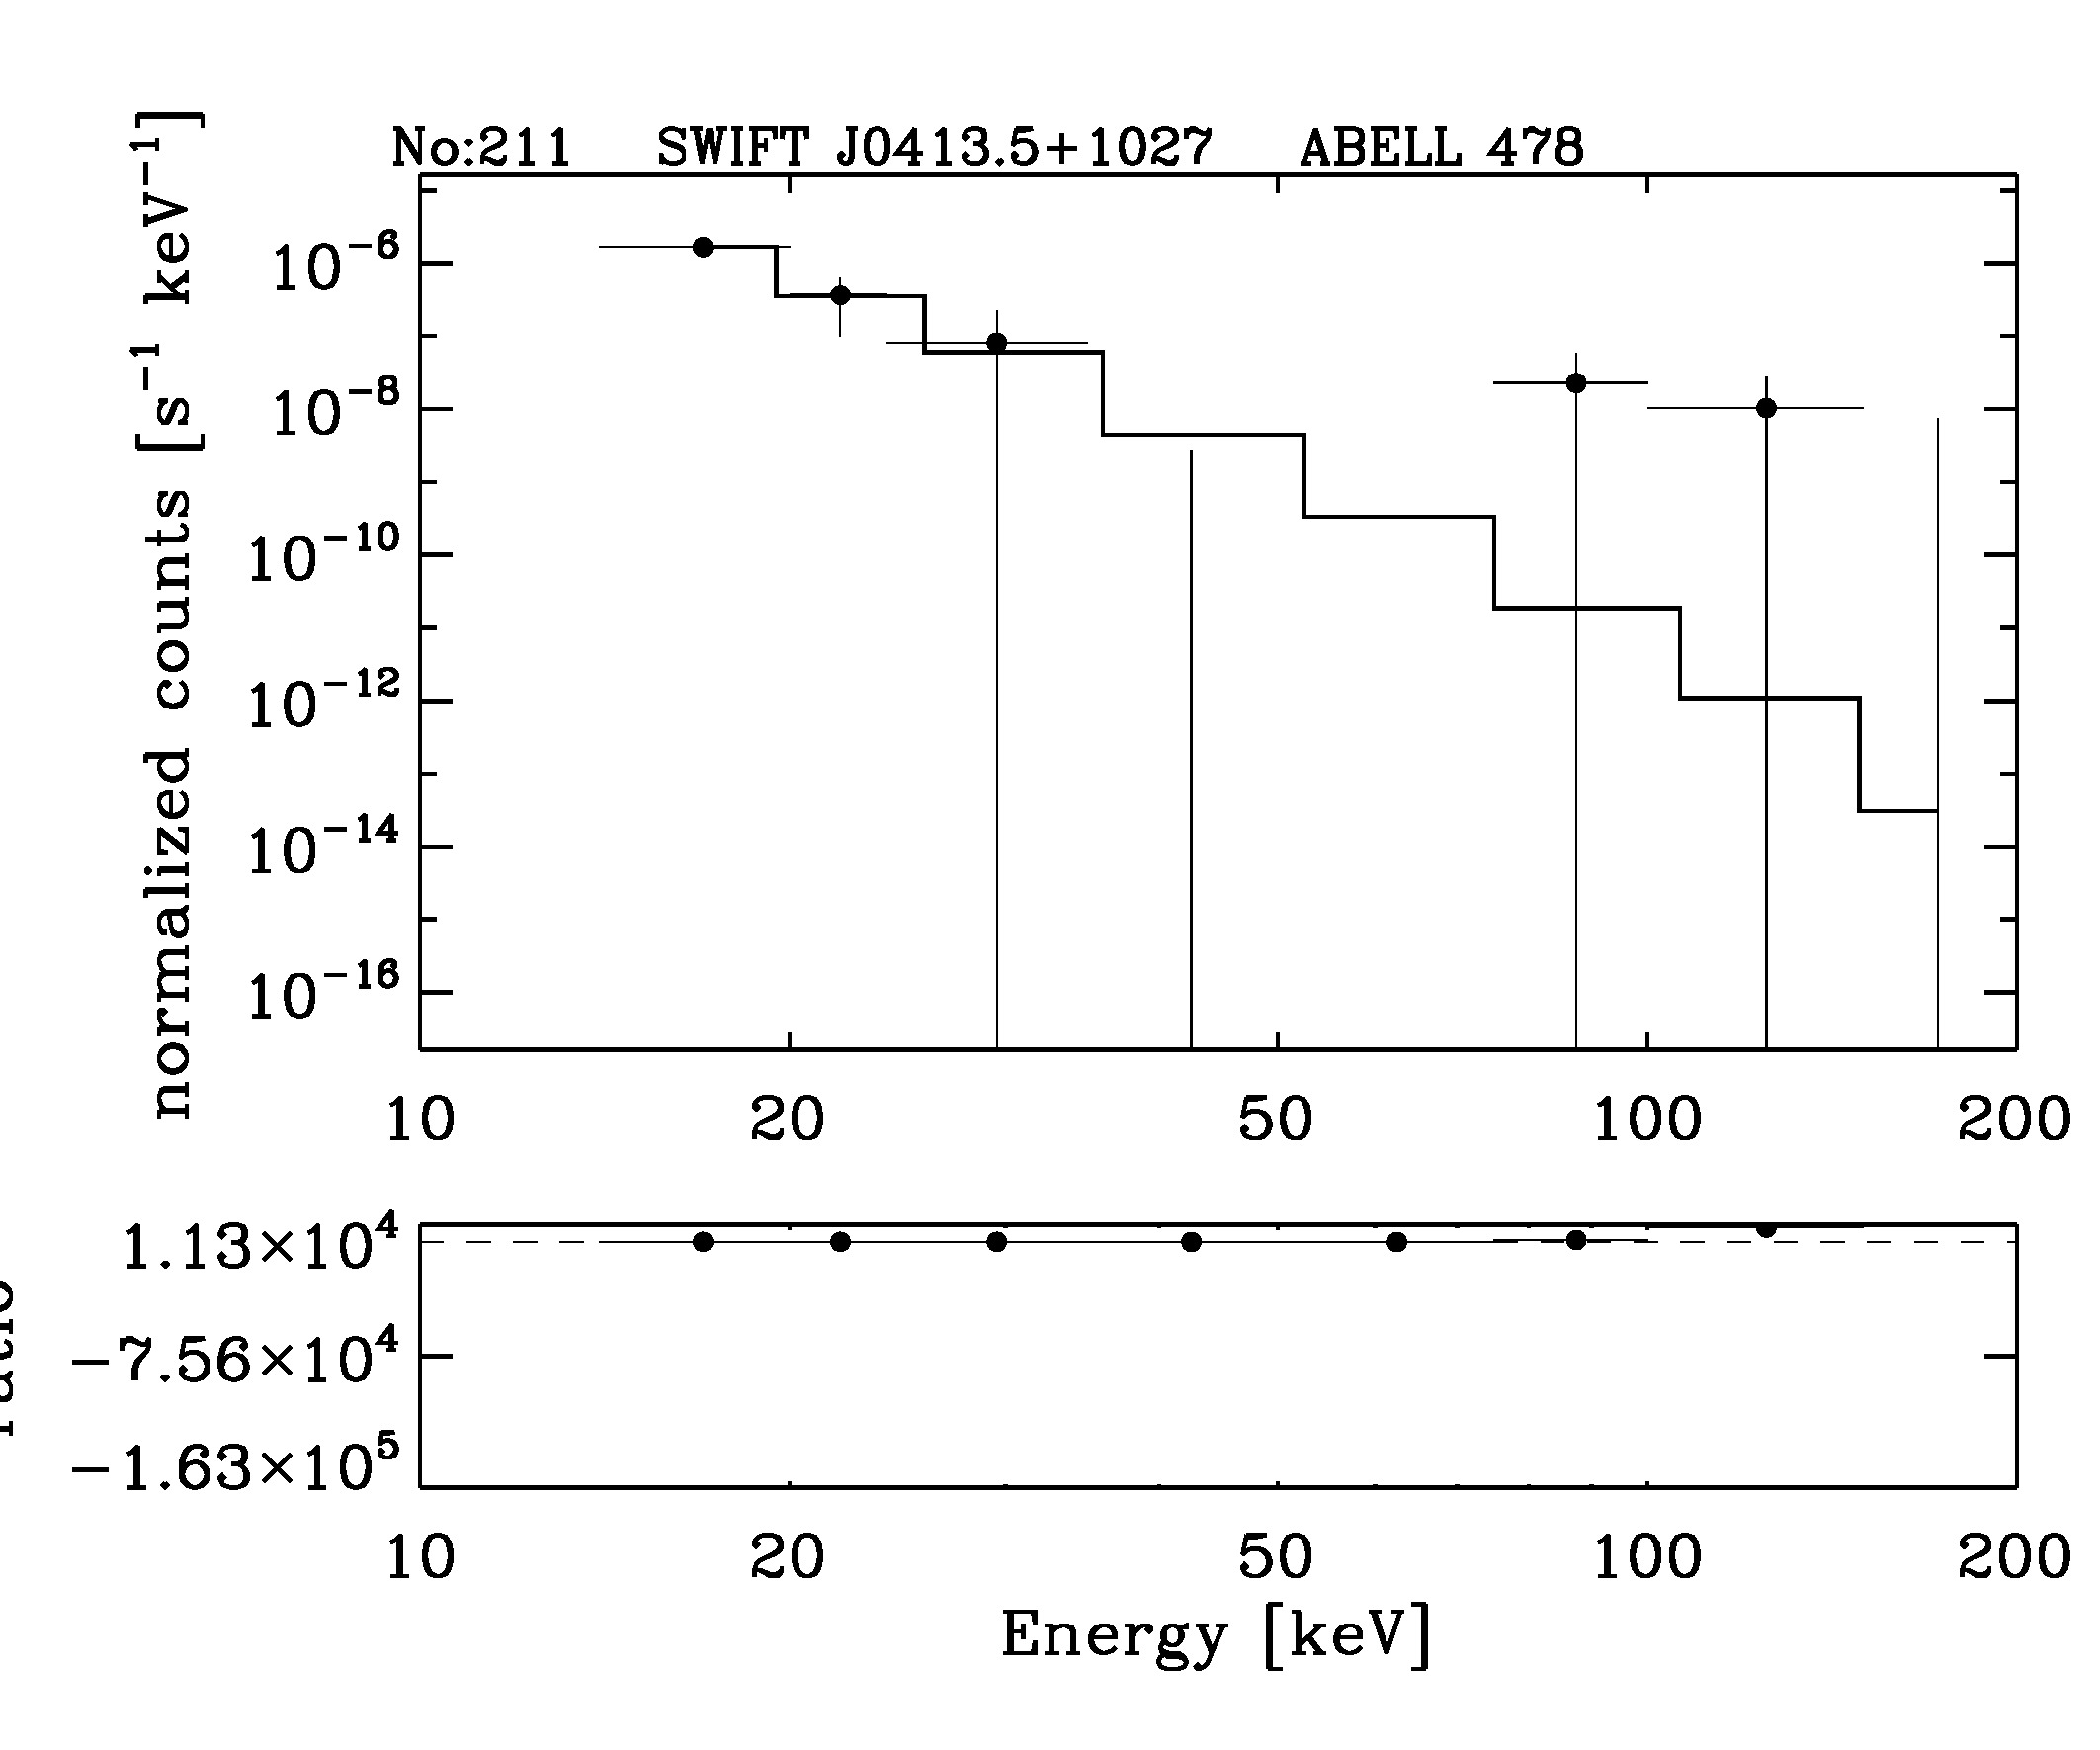 BAT Spectrum for SWIFT J0413.5+1027